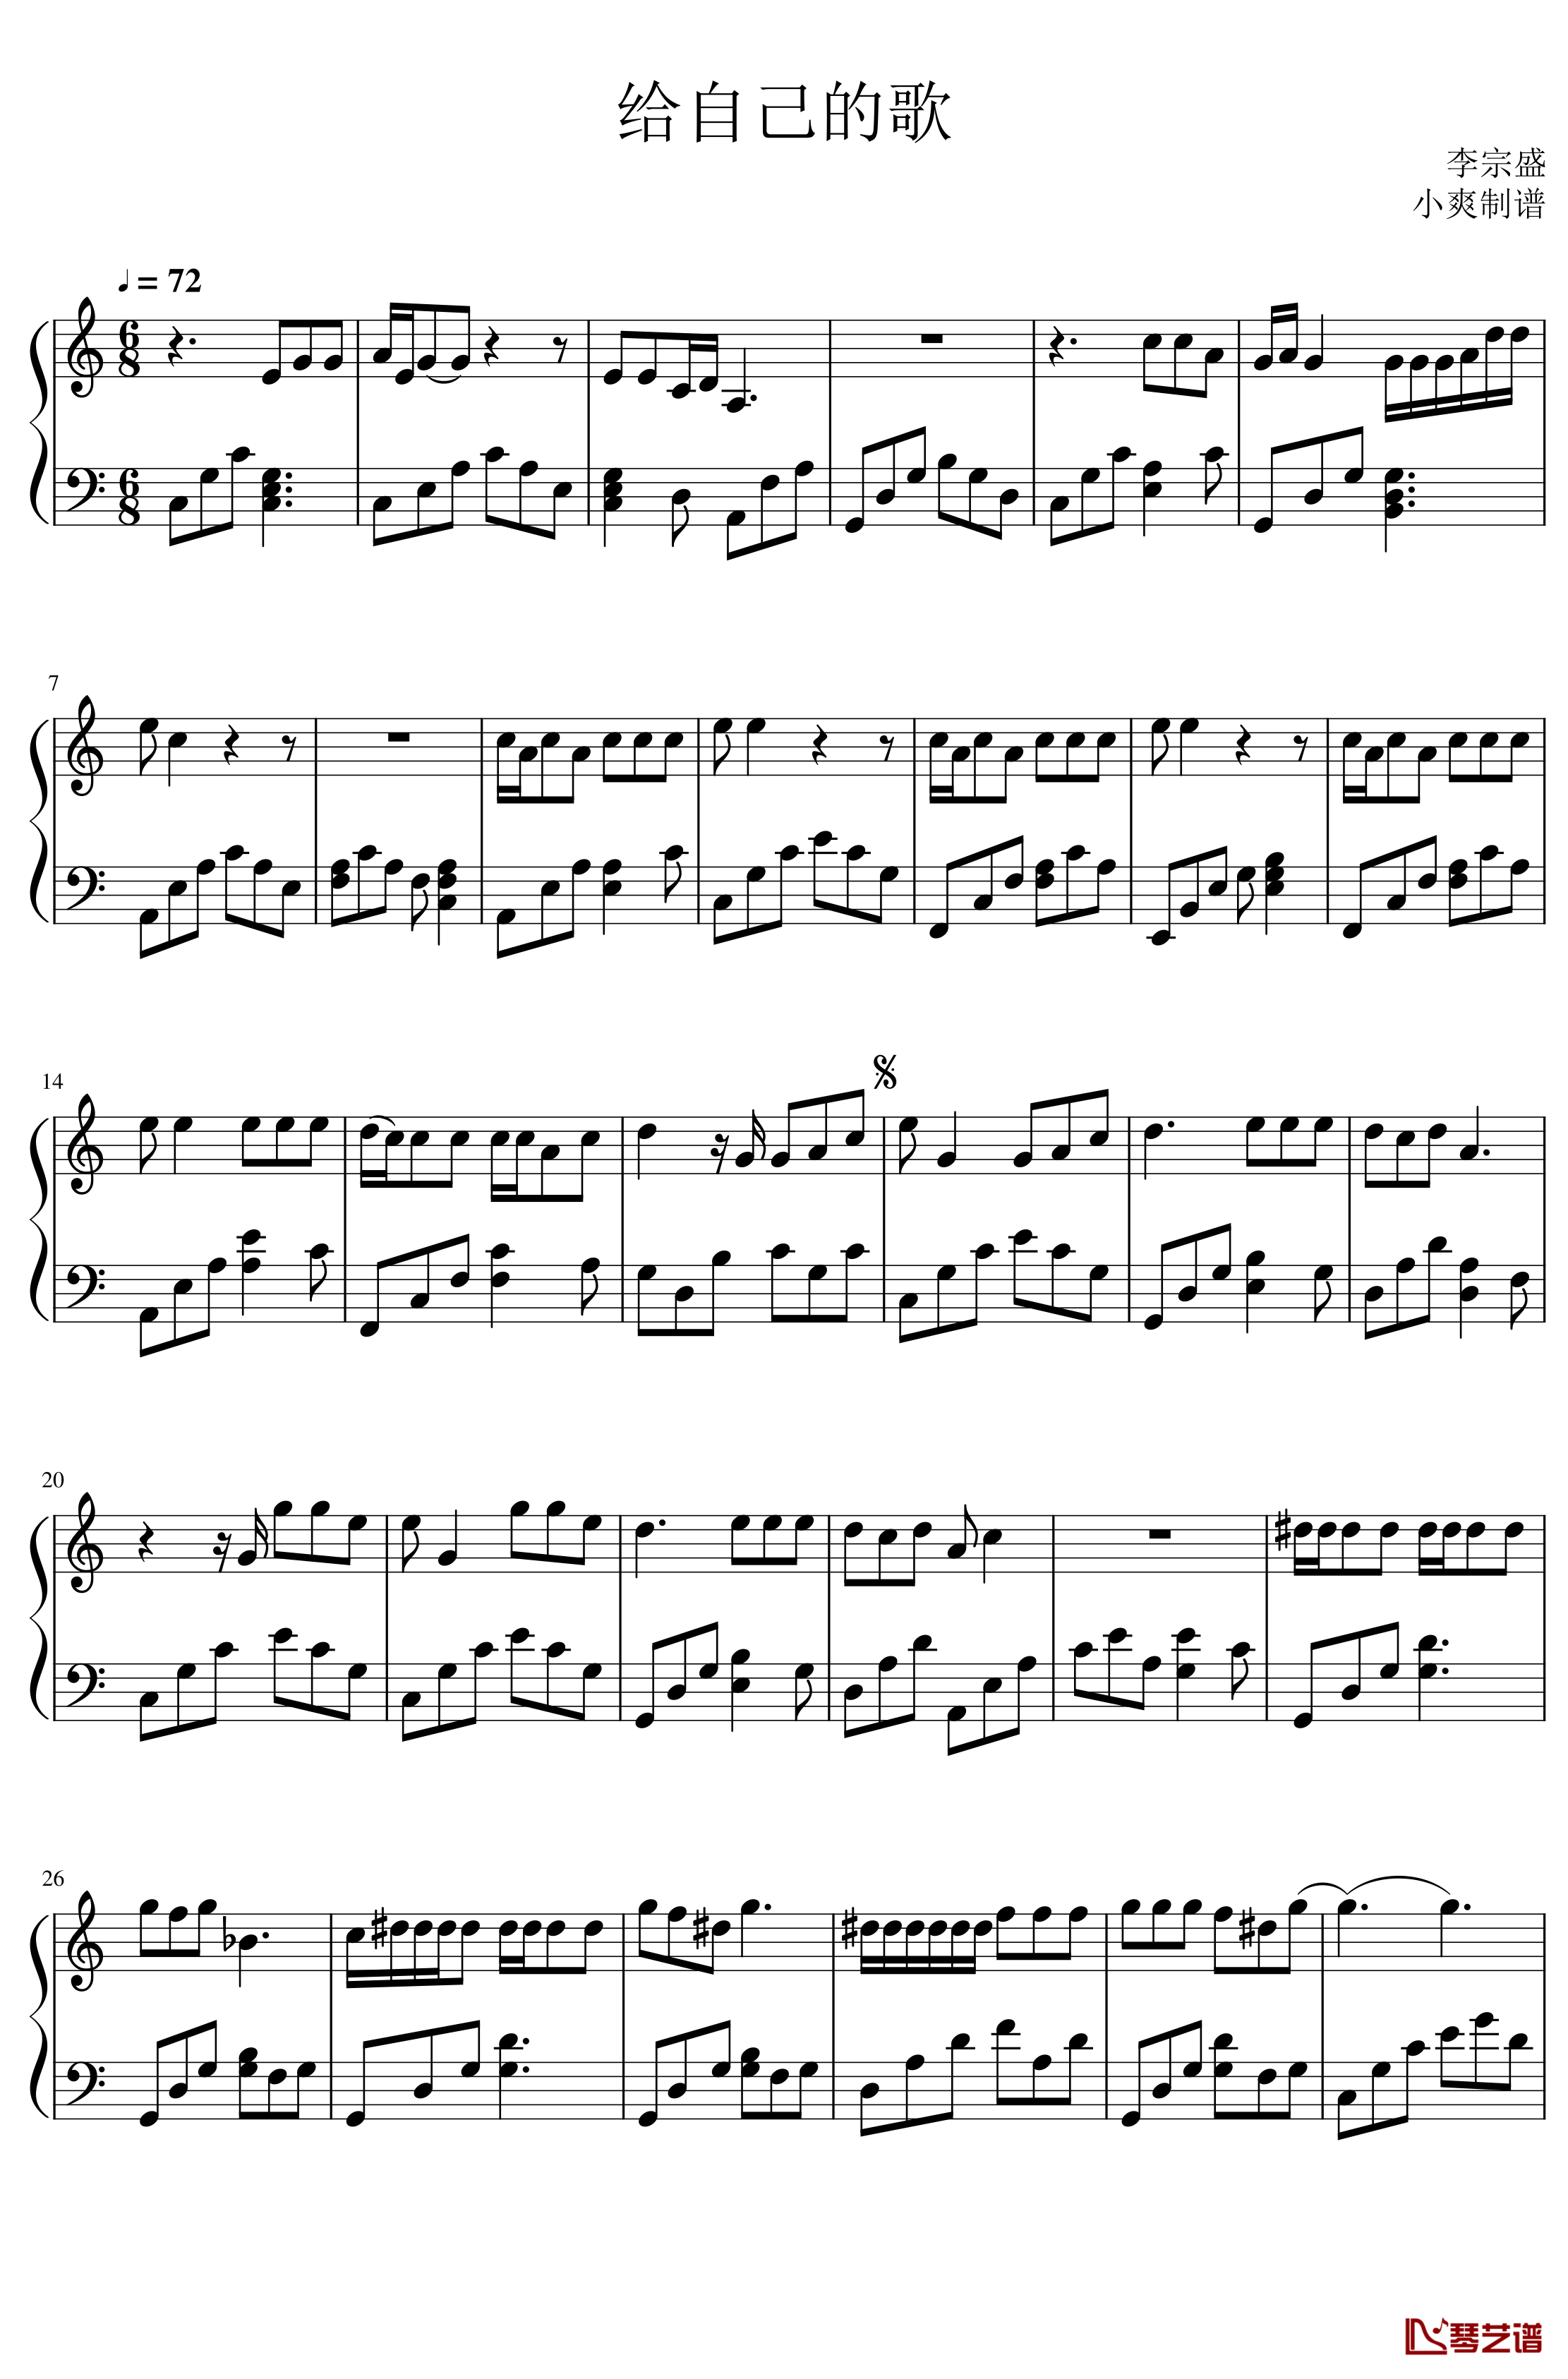 李宗盛《给自己的歌》钢琴谱1